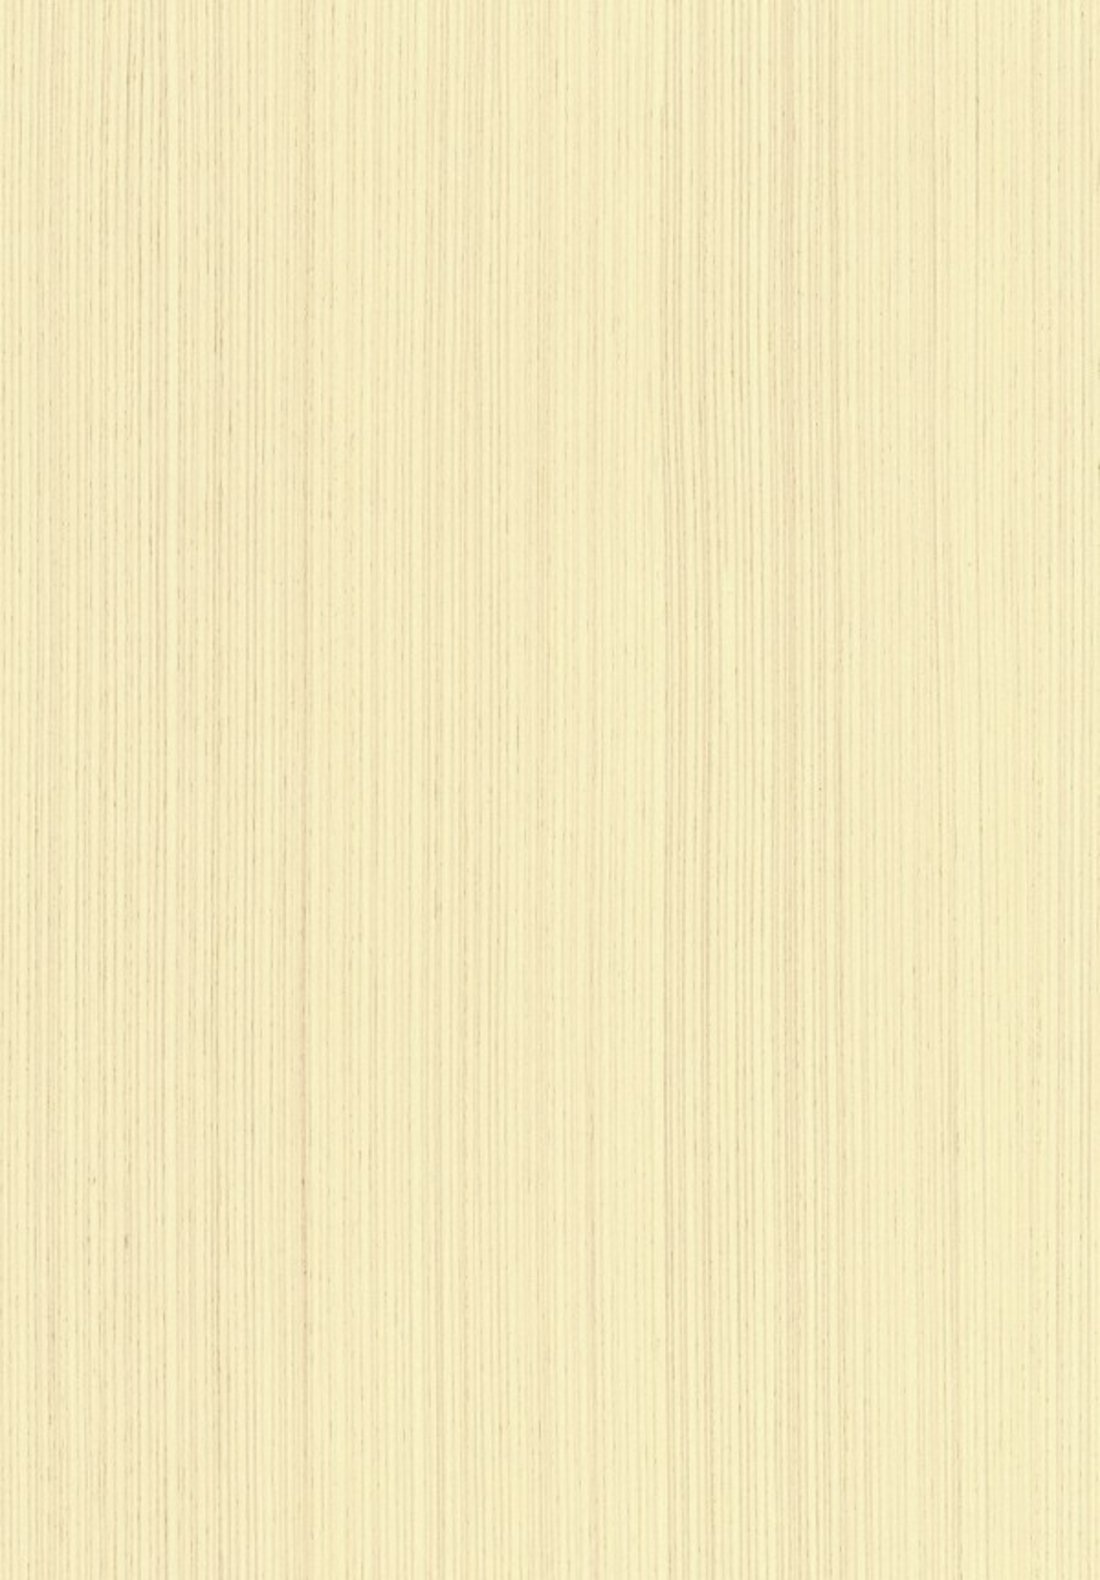 K6204-白橡木直纹-高品质柳桉芯夹板基材+科技木皮+UV涂料环保涂装 - 虹微木饰面 木皮涂装板 木皮 护墙板